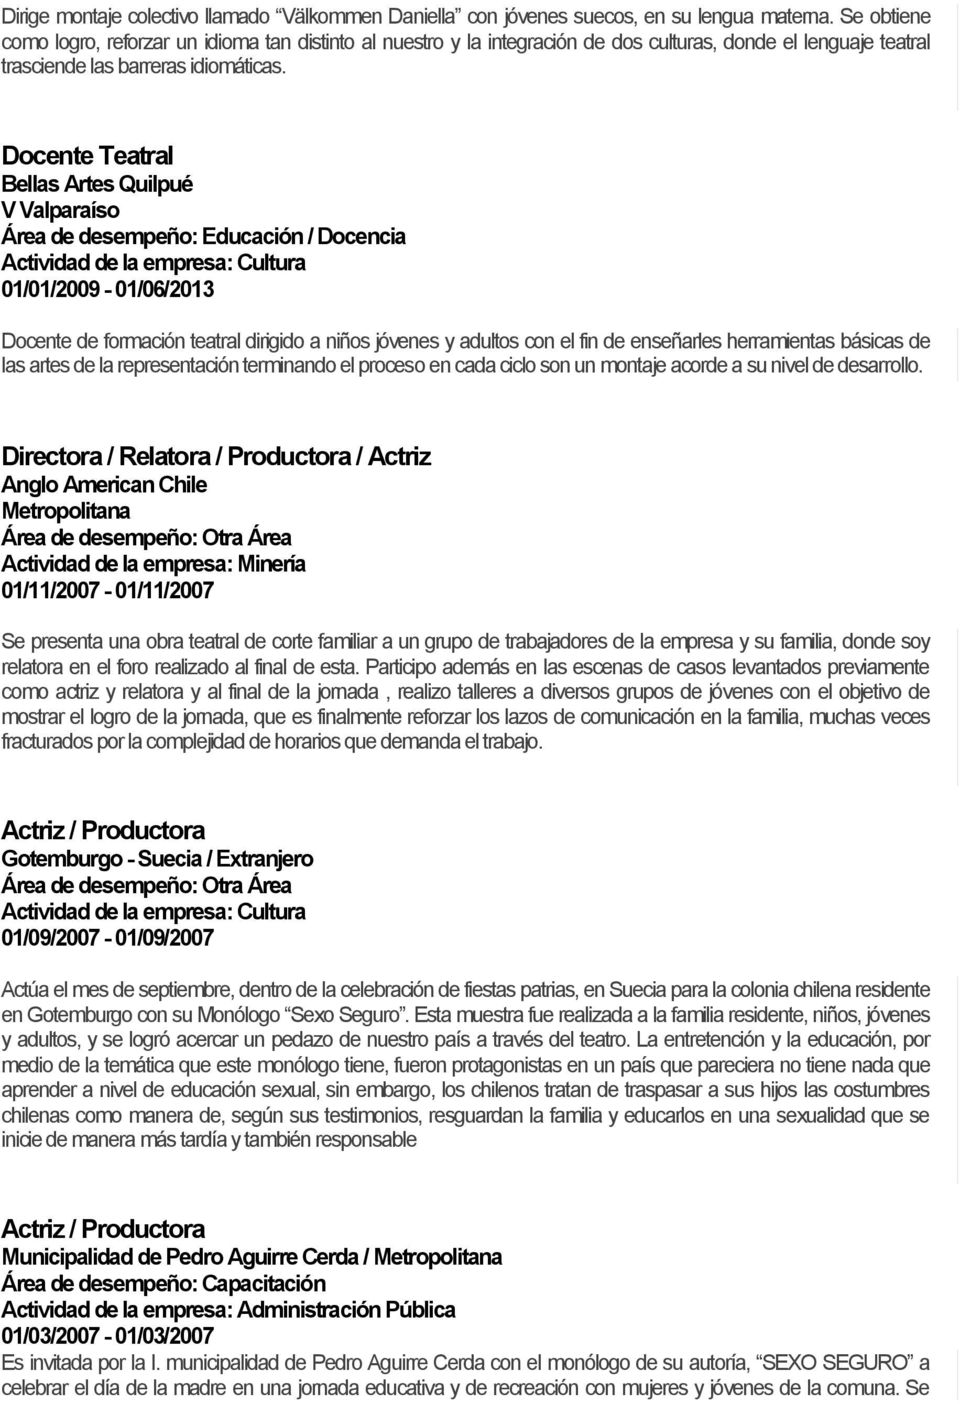 Docente Teatral Bellas Artes Quilpué 01/01/2009-01/06/2013 Docente de formación teatral dirigido a niños jóvenes y adultos con el fin de enseñarles herramientas básicas de las artes de la